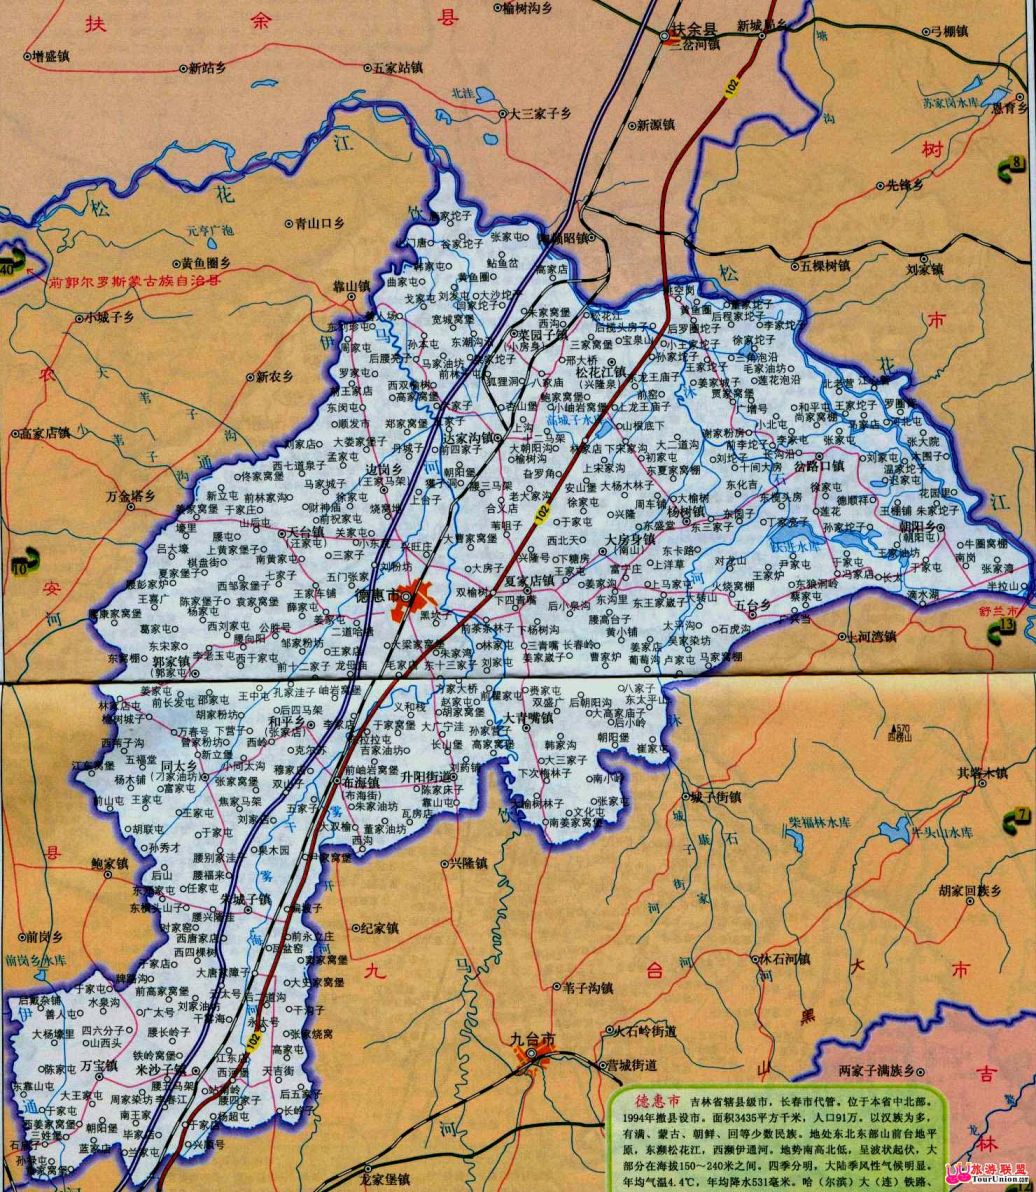 地图全图高清版(点击可查看大图)    德惠市简介:   德惠市位于吉林省图片